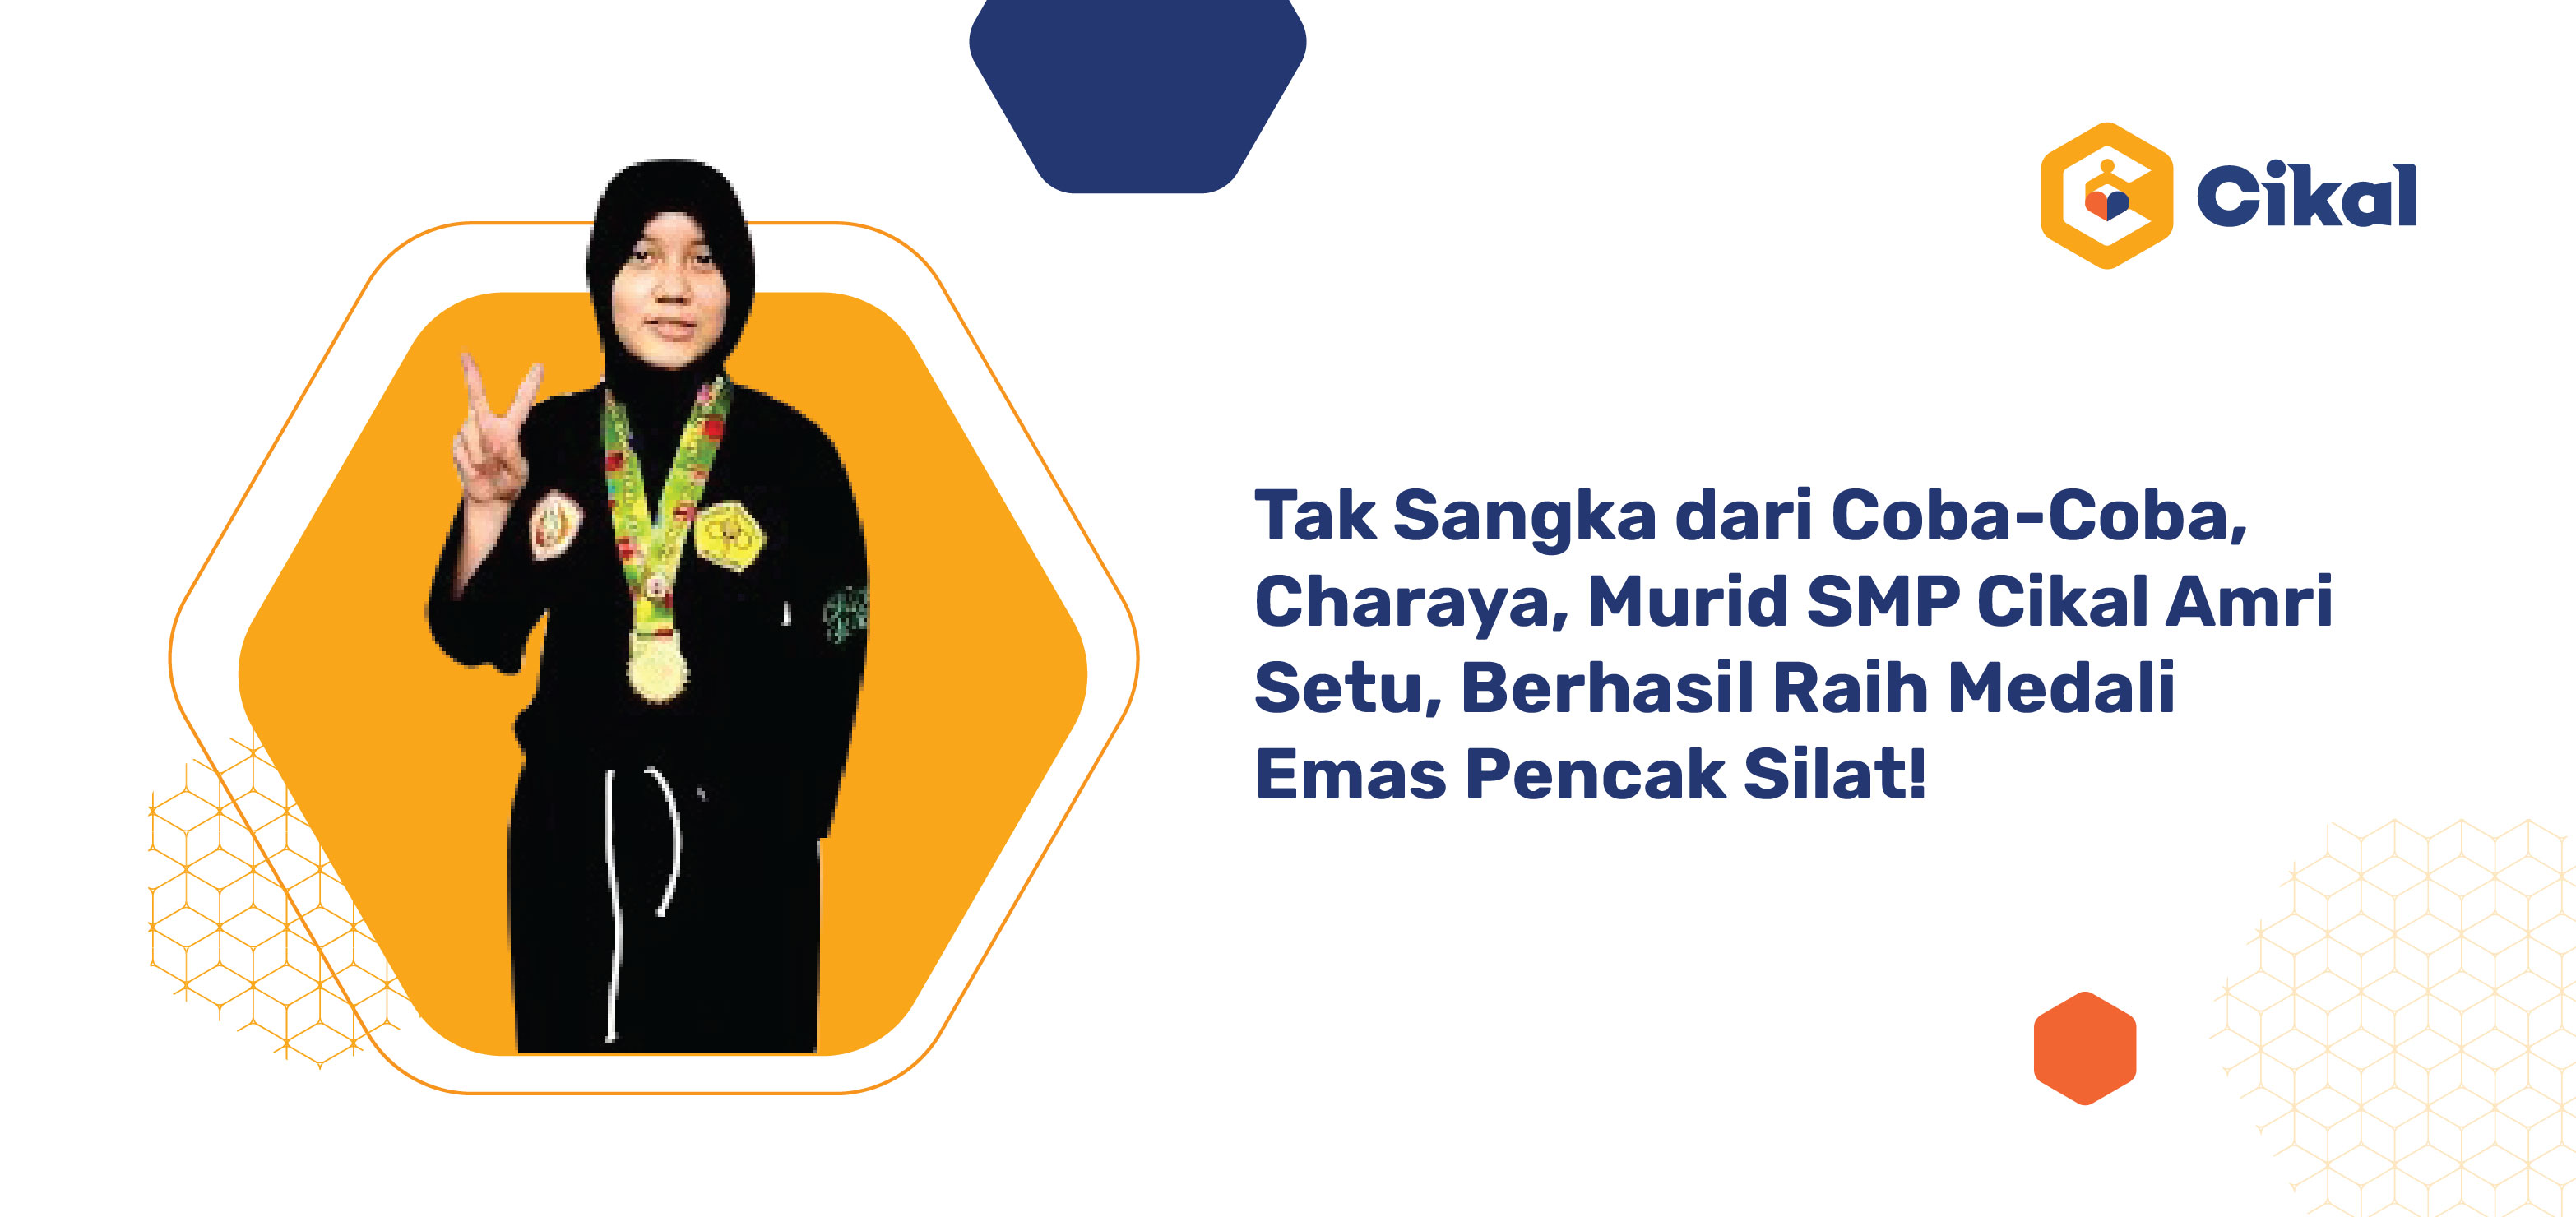 Tak Sangka dari Coba-Coba, Charaya, Murid SMP Cikal Amri Setu, Berhasil Raih Medali Emas Pencak Silat!